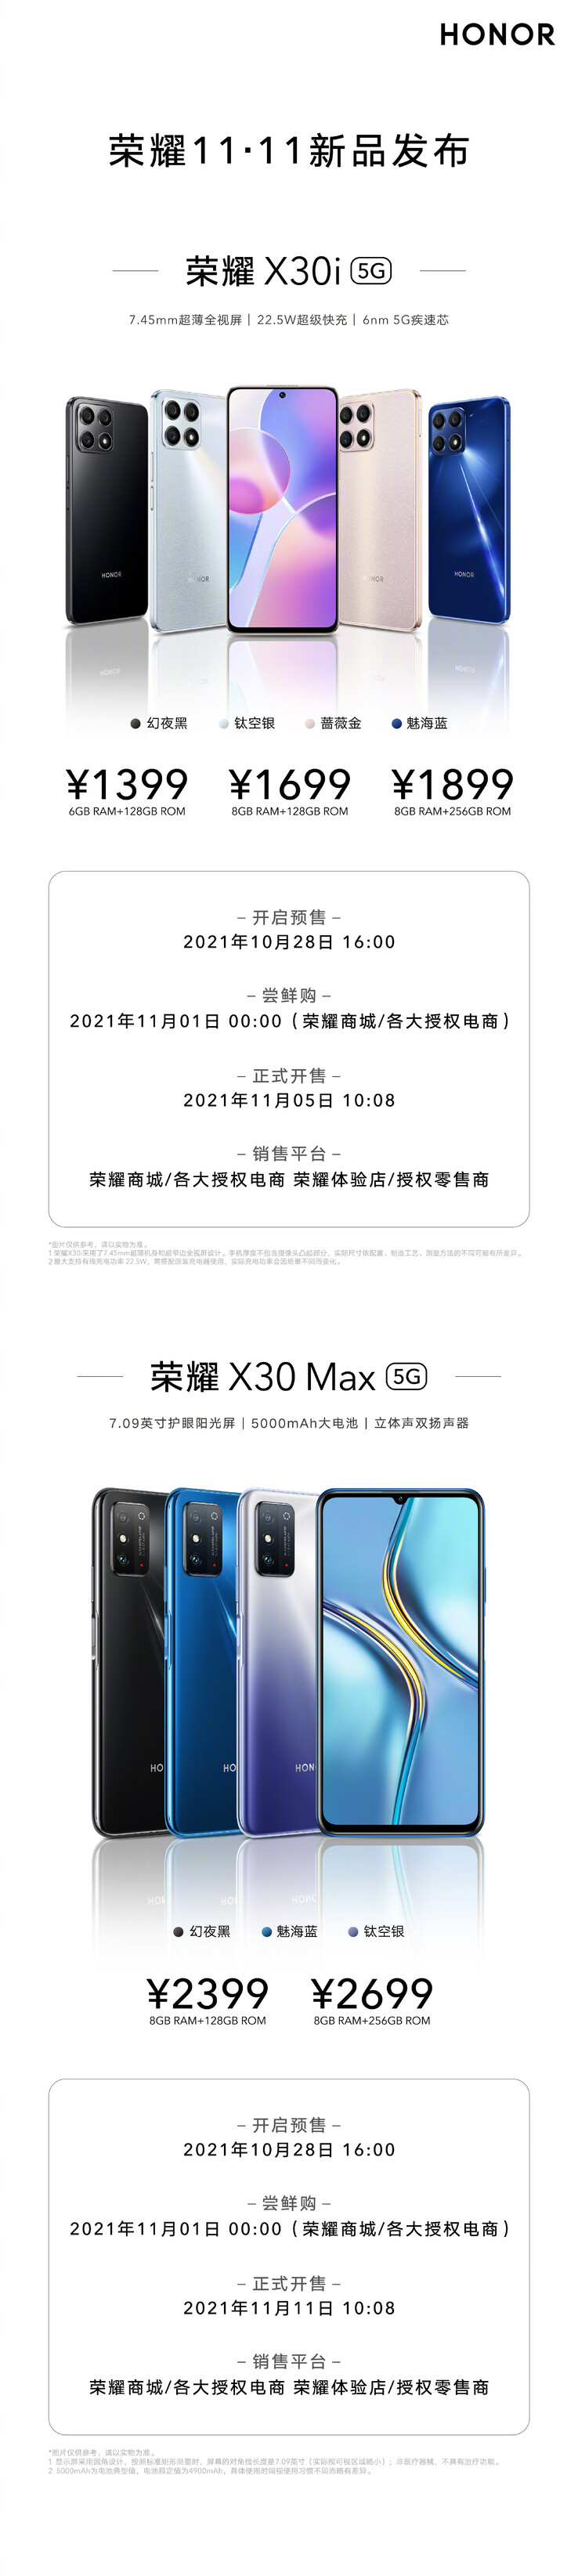 Honor presenta l'X30i e l'X30 Max con 3 varianti di colore ciascuno. (Fonte: Honor via Weibo)